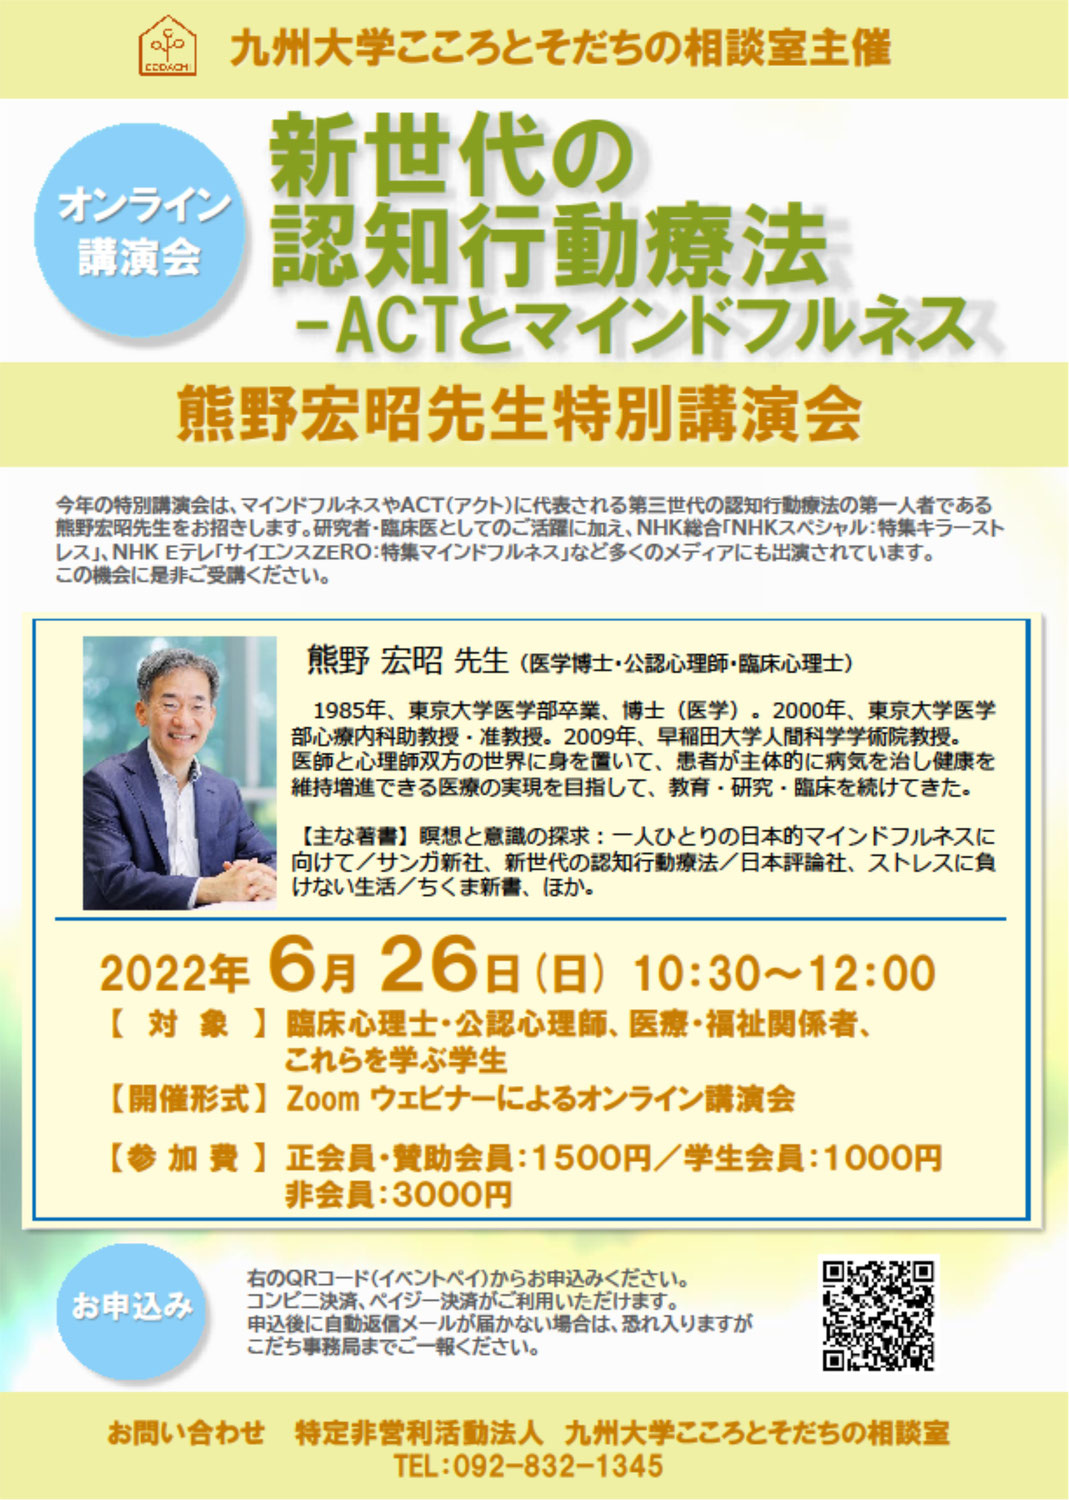 熊野宏昭先生特別講演会「新世代の認知行動療法ーACTとマインドフルネス」